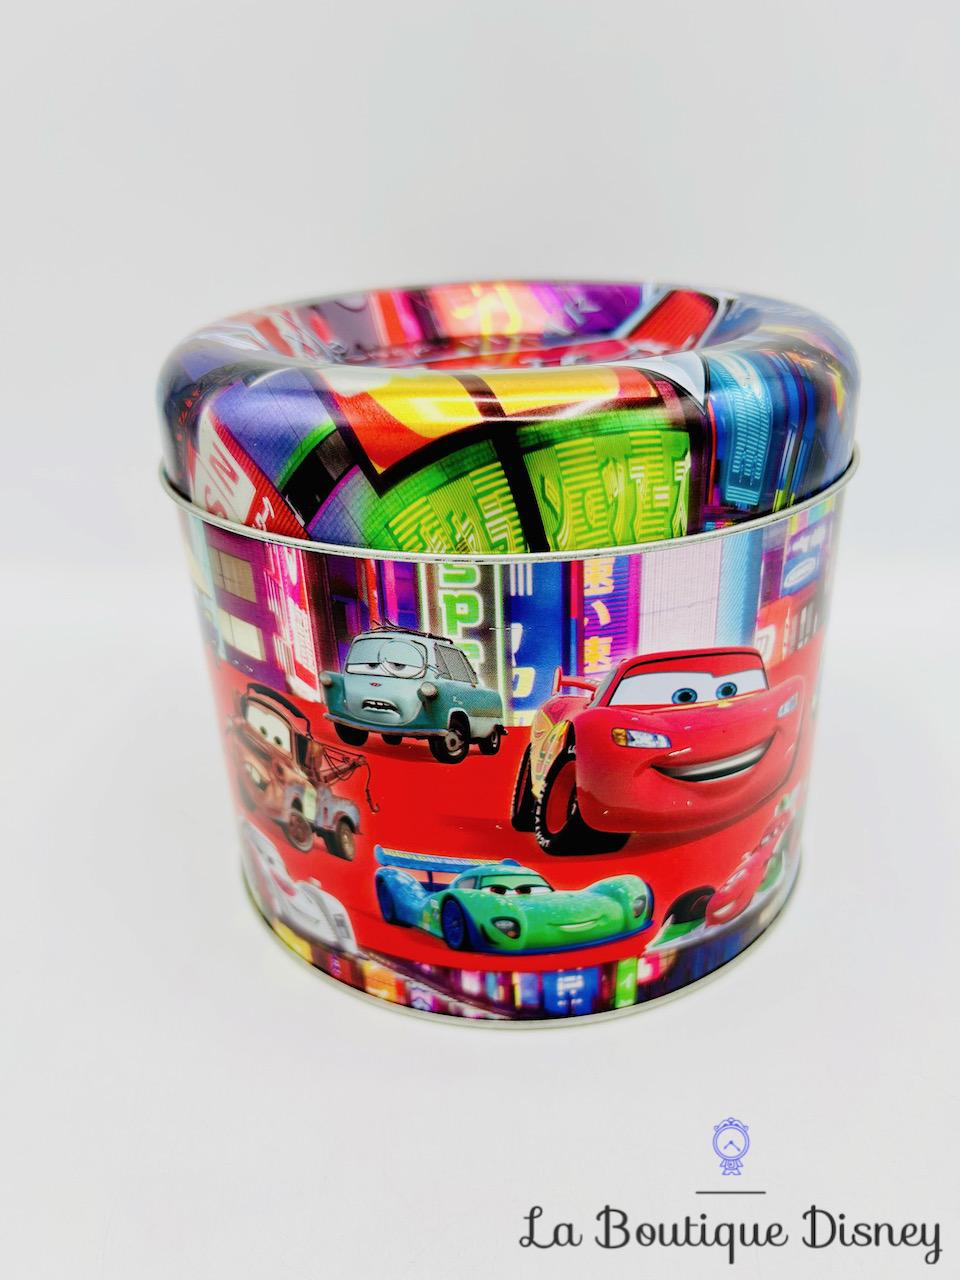 Boite métal Cars 2 Disney Pixar Hachette Jeunesse ronde voitures